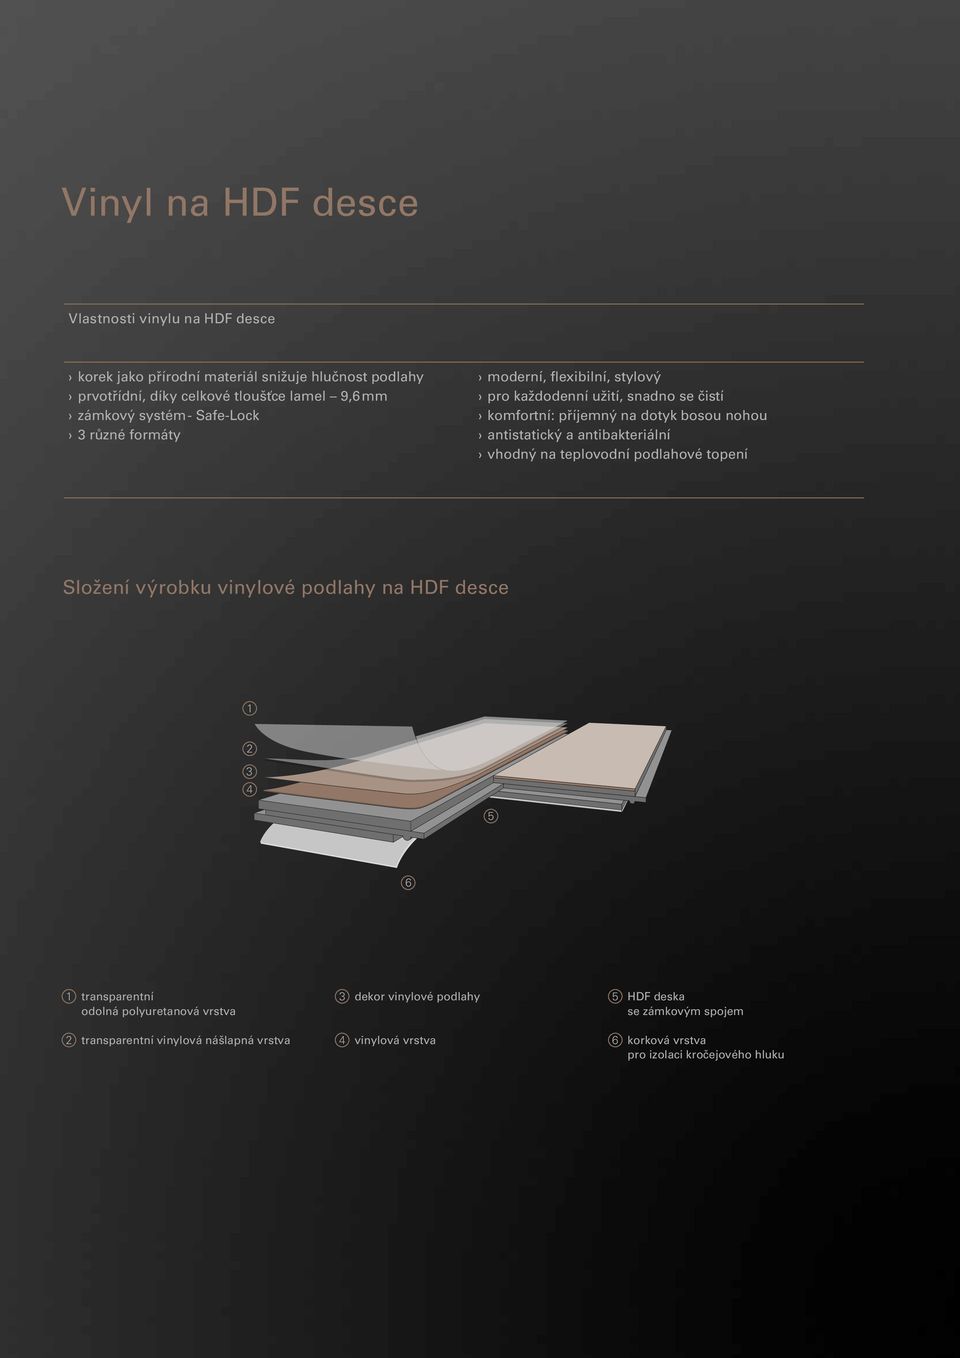 antibakteriální vhodný na teplovodní podlahové topení Složení výrobku vinylové podlahy na HDF desce 1 2 3 4 5 6 1 transparentní 3 dekor vinylové podlahy 5